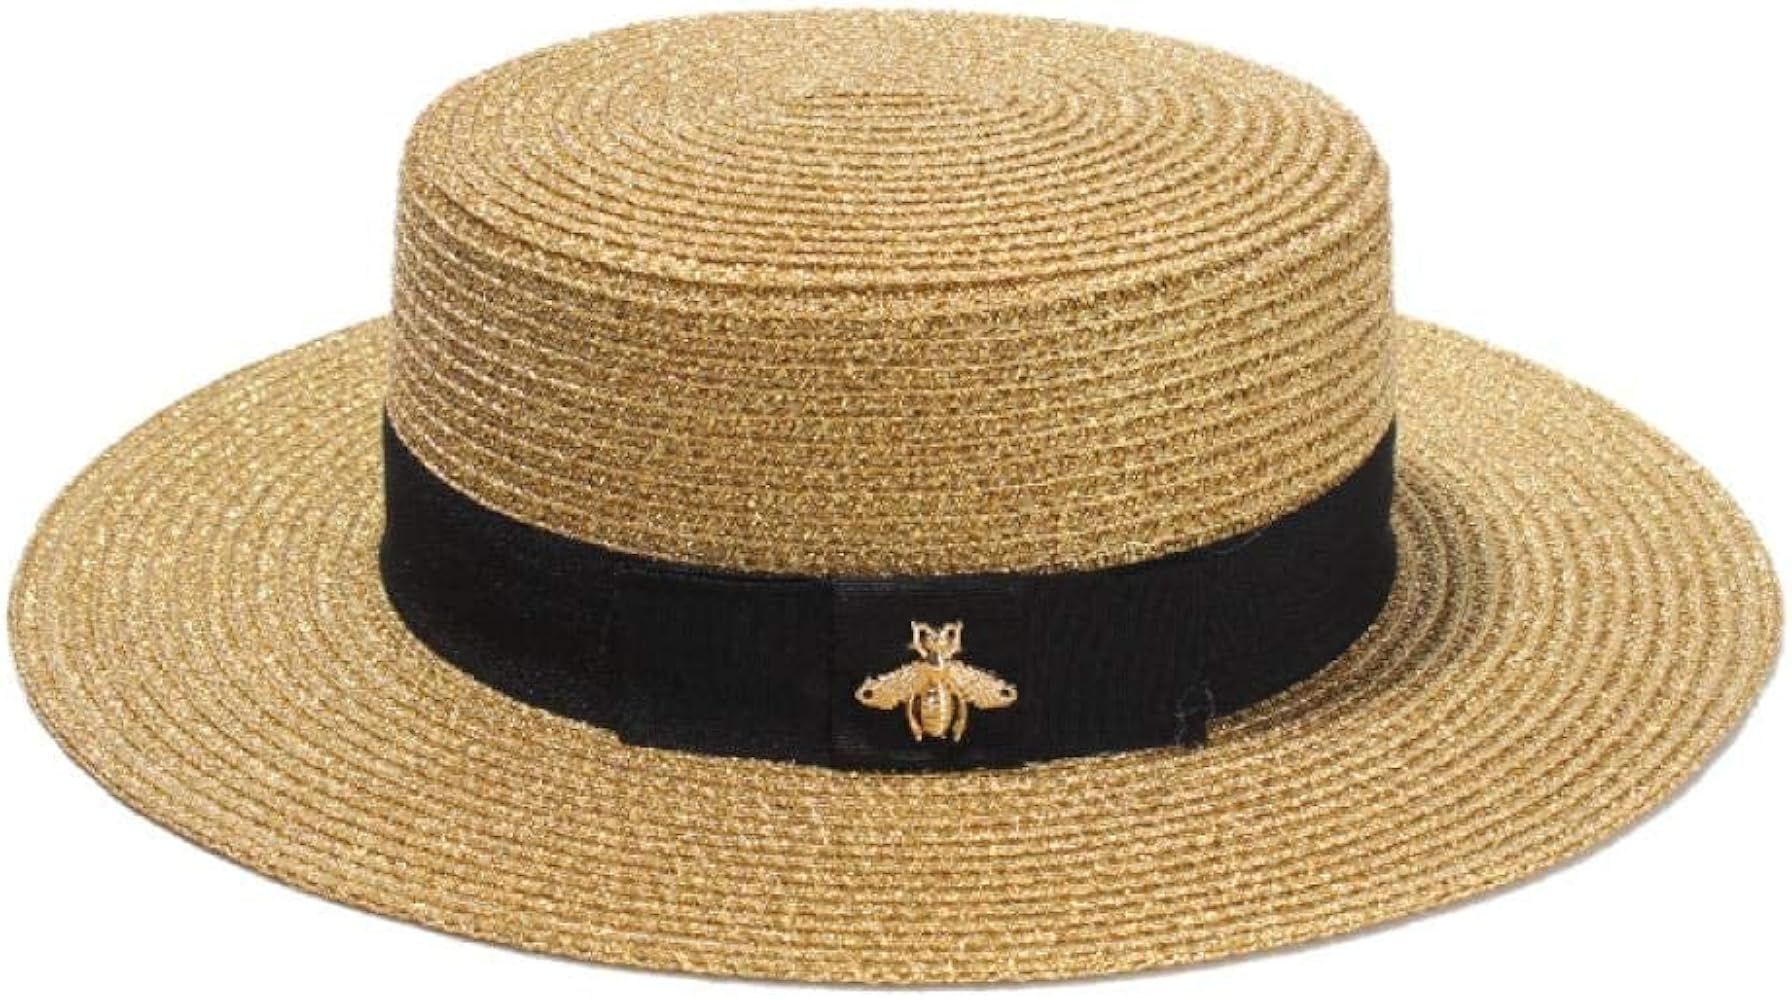 Straw Sun Hat,bee Hat,Woven Bucket Hat,Sun Hats for Women,Boater Hat Women,Gold Top Hat | Amazon (US)